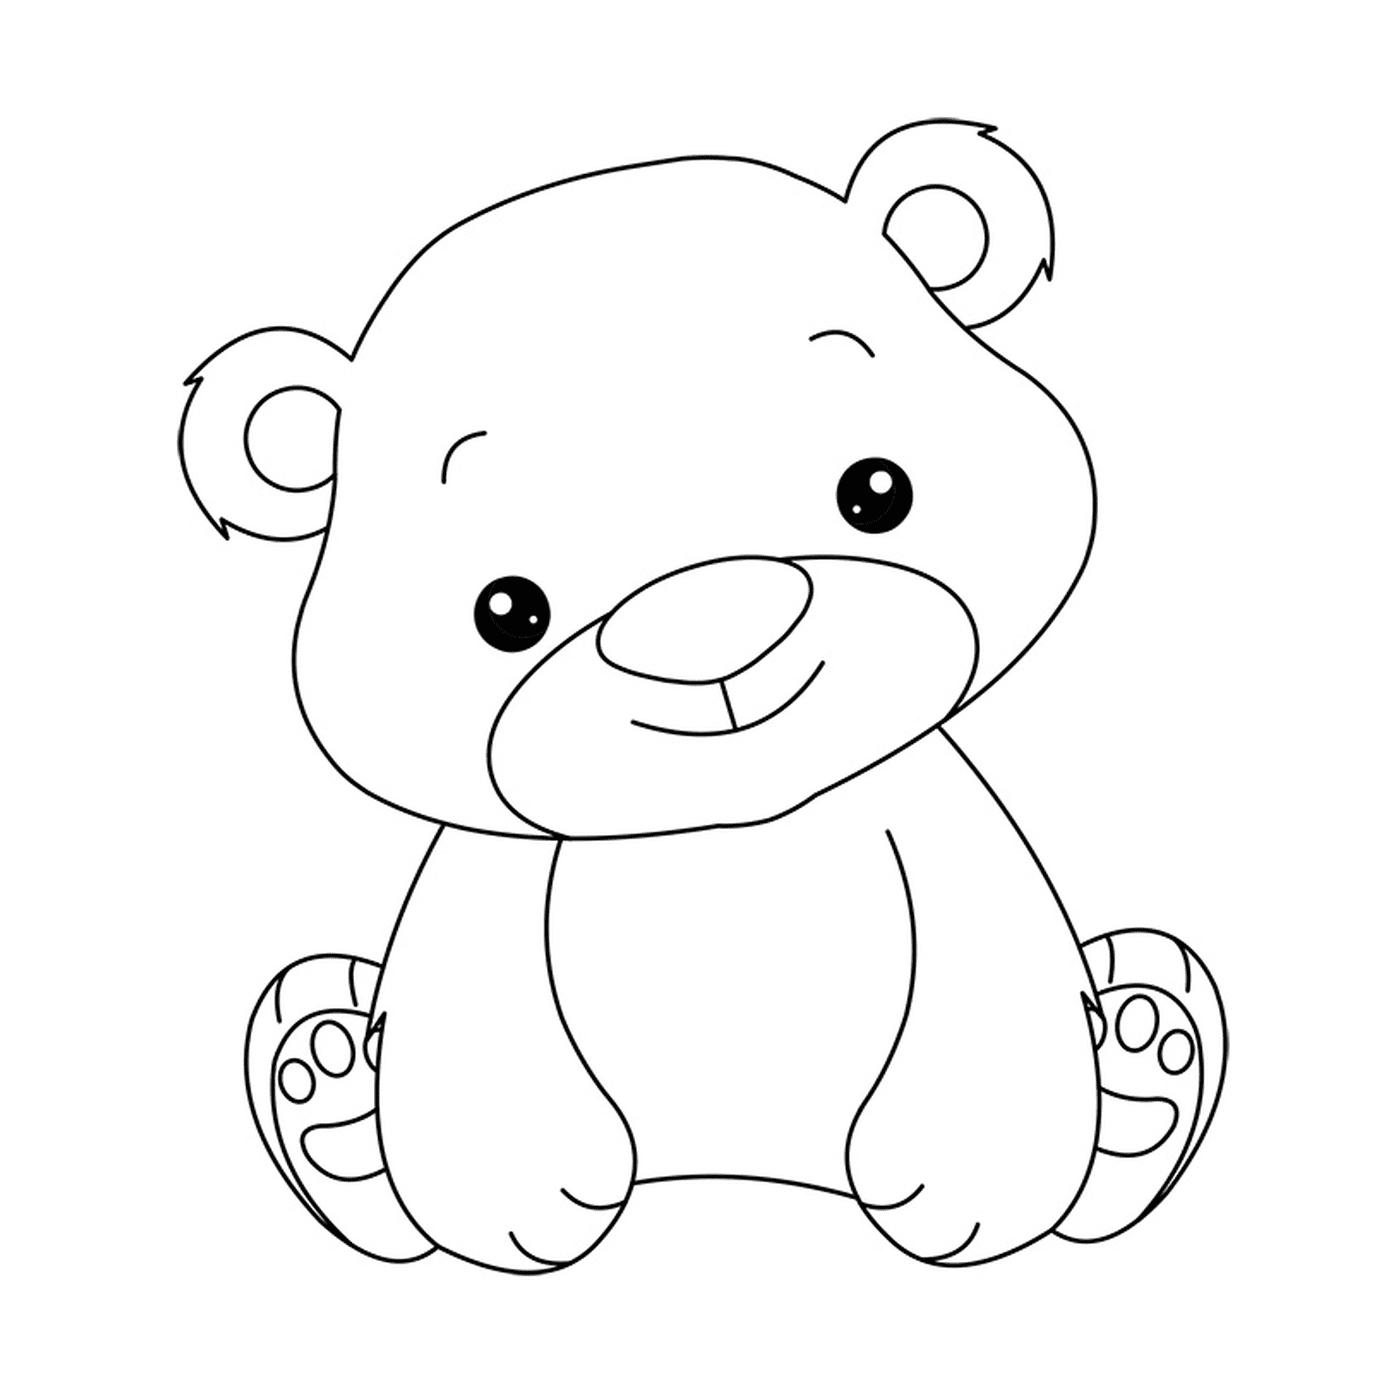  a teddy bear 